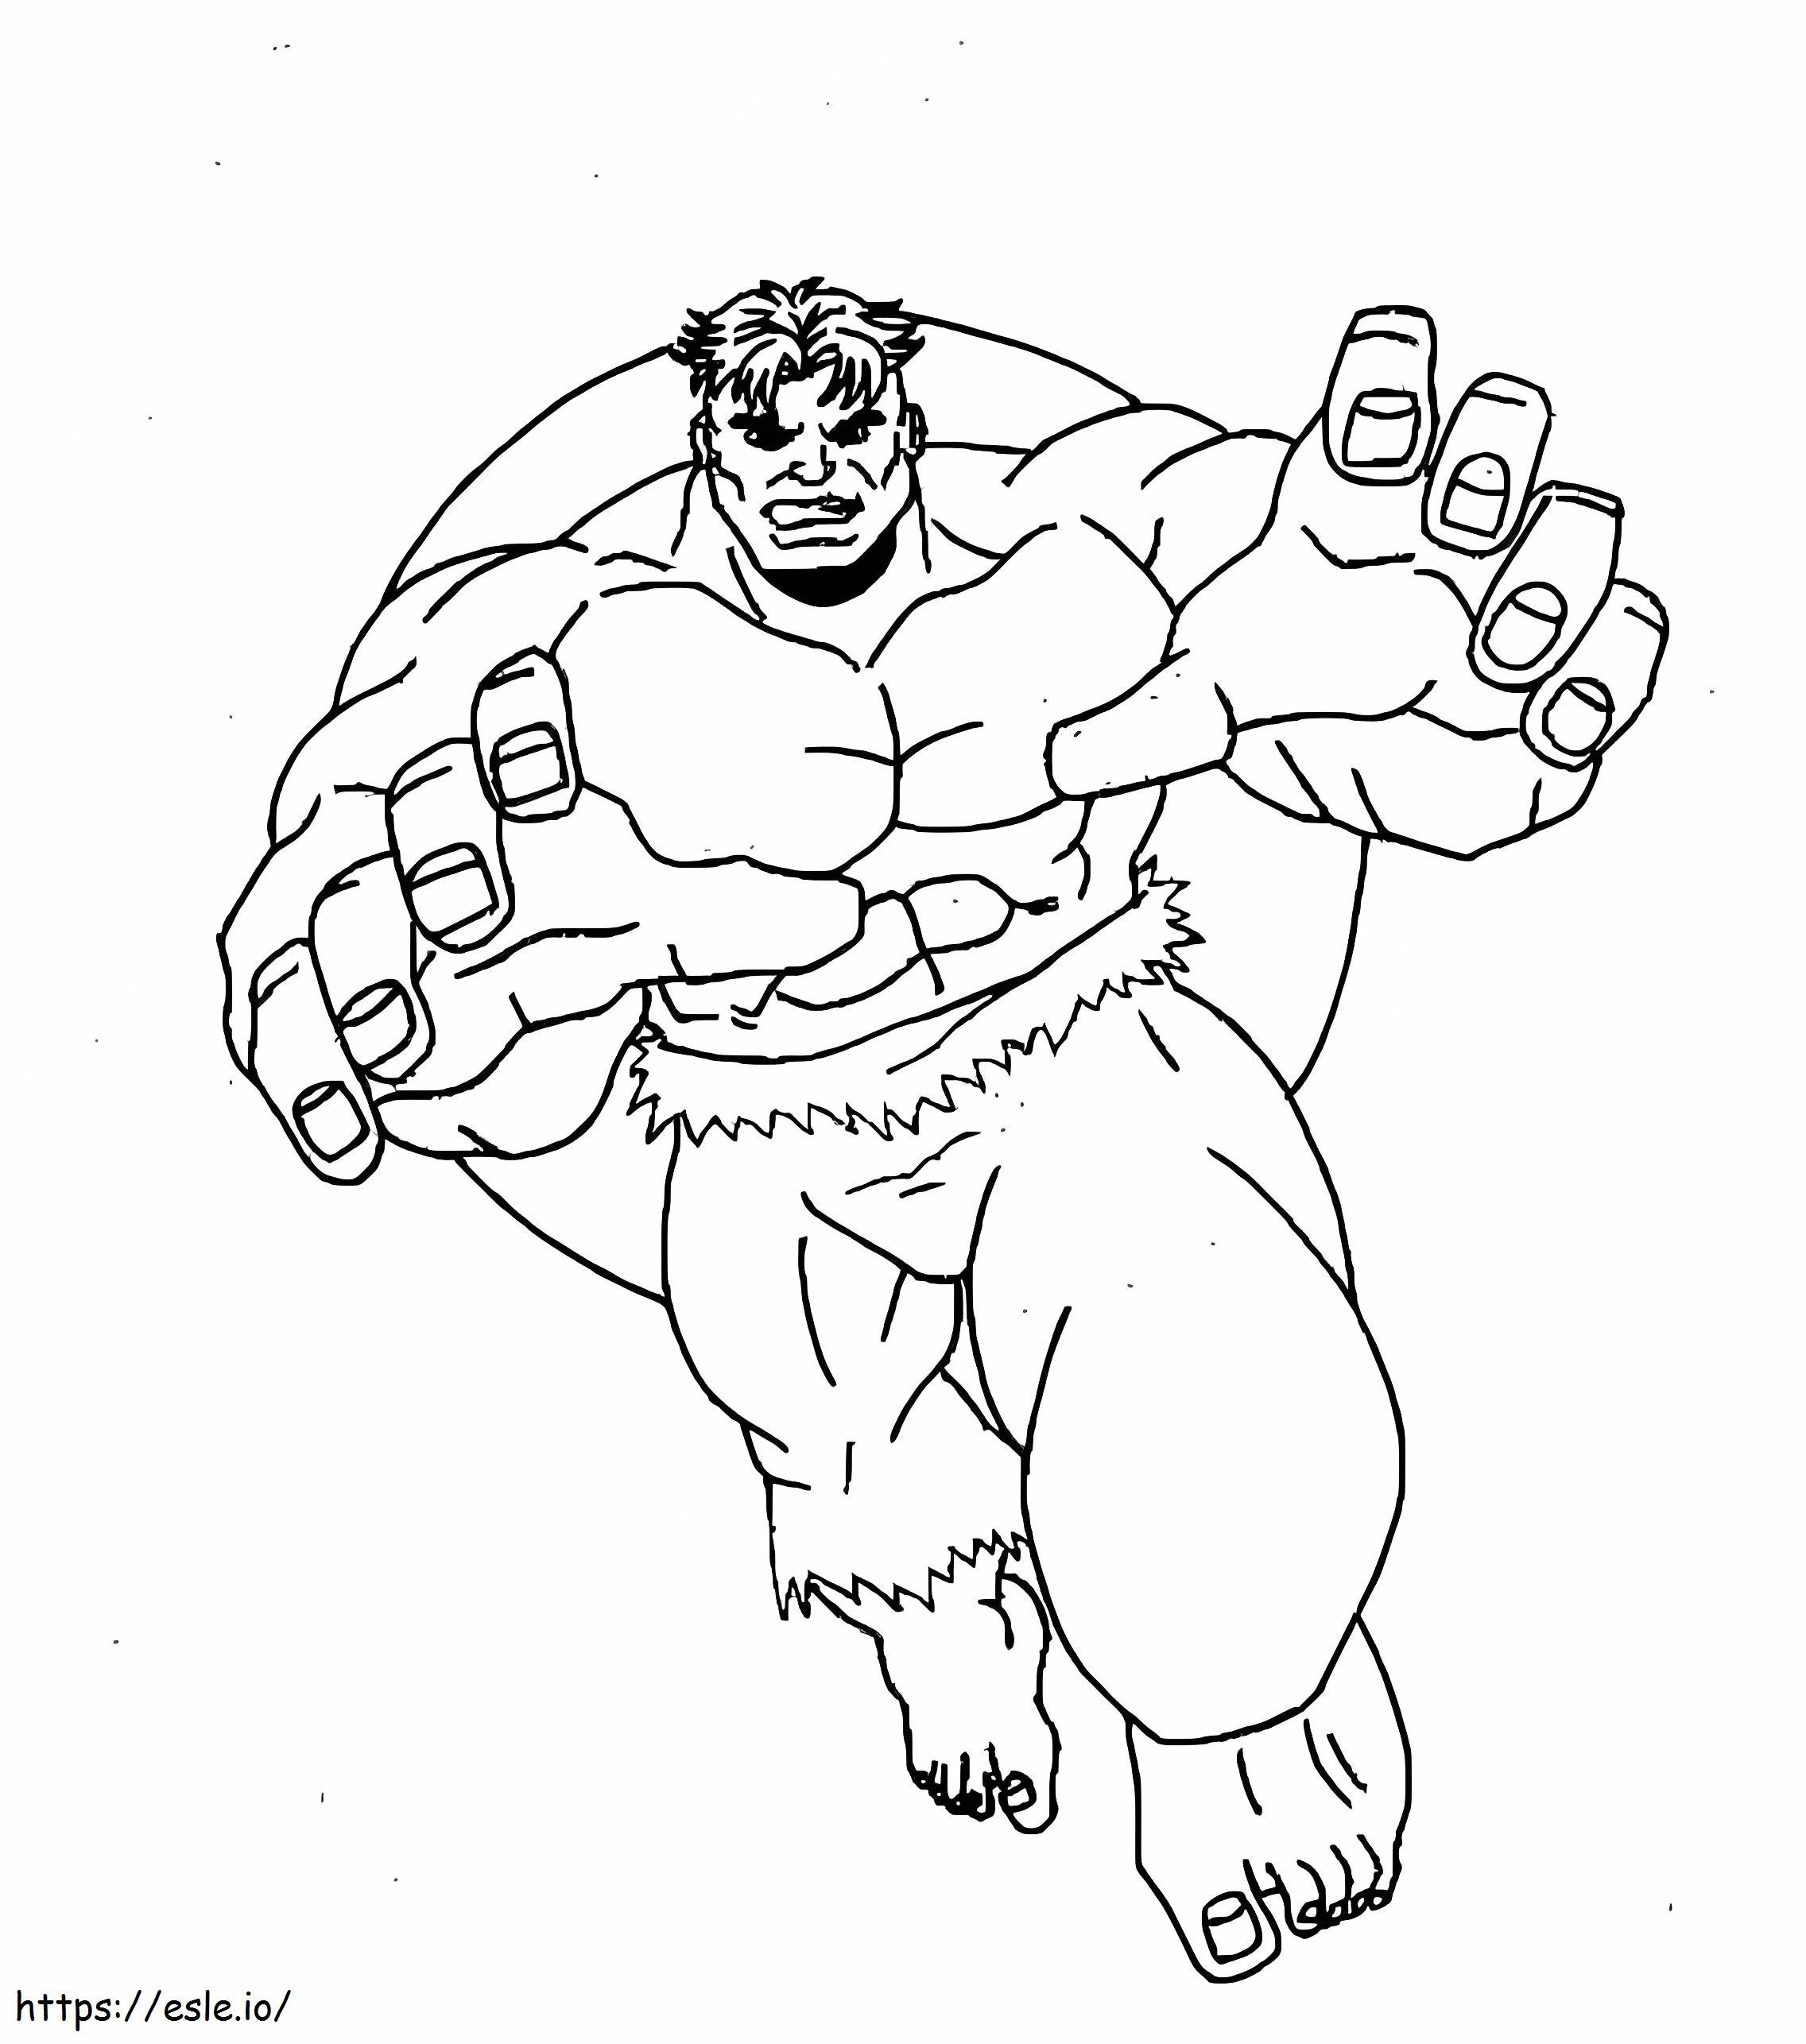 Hulk rennt ausmalbilder